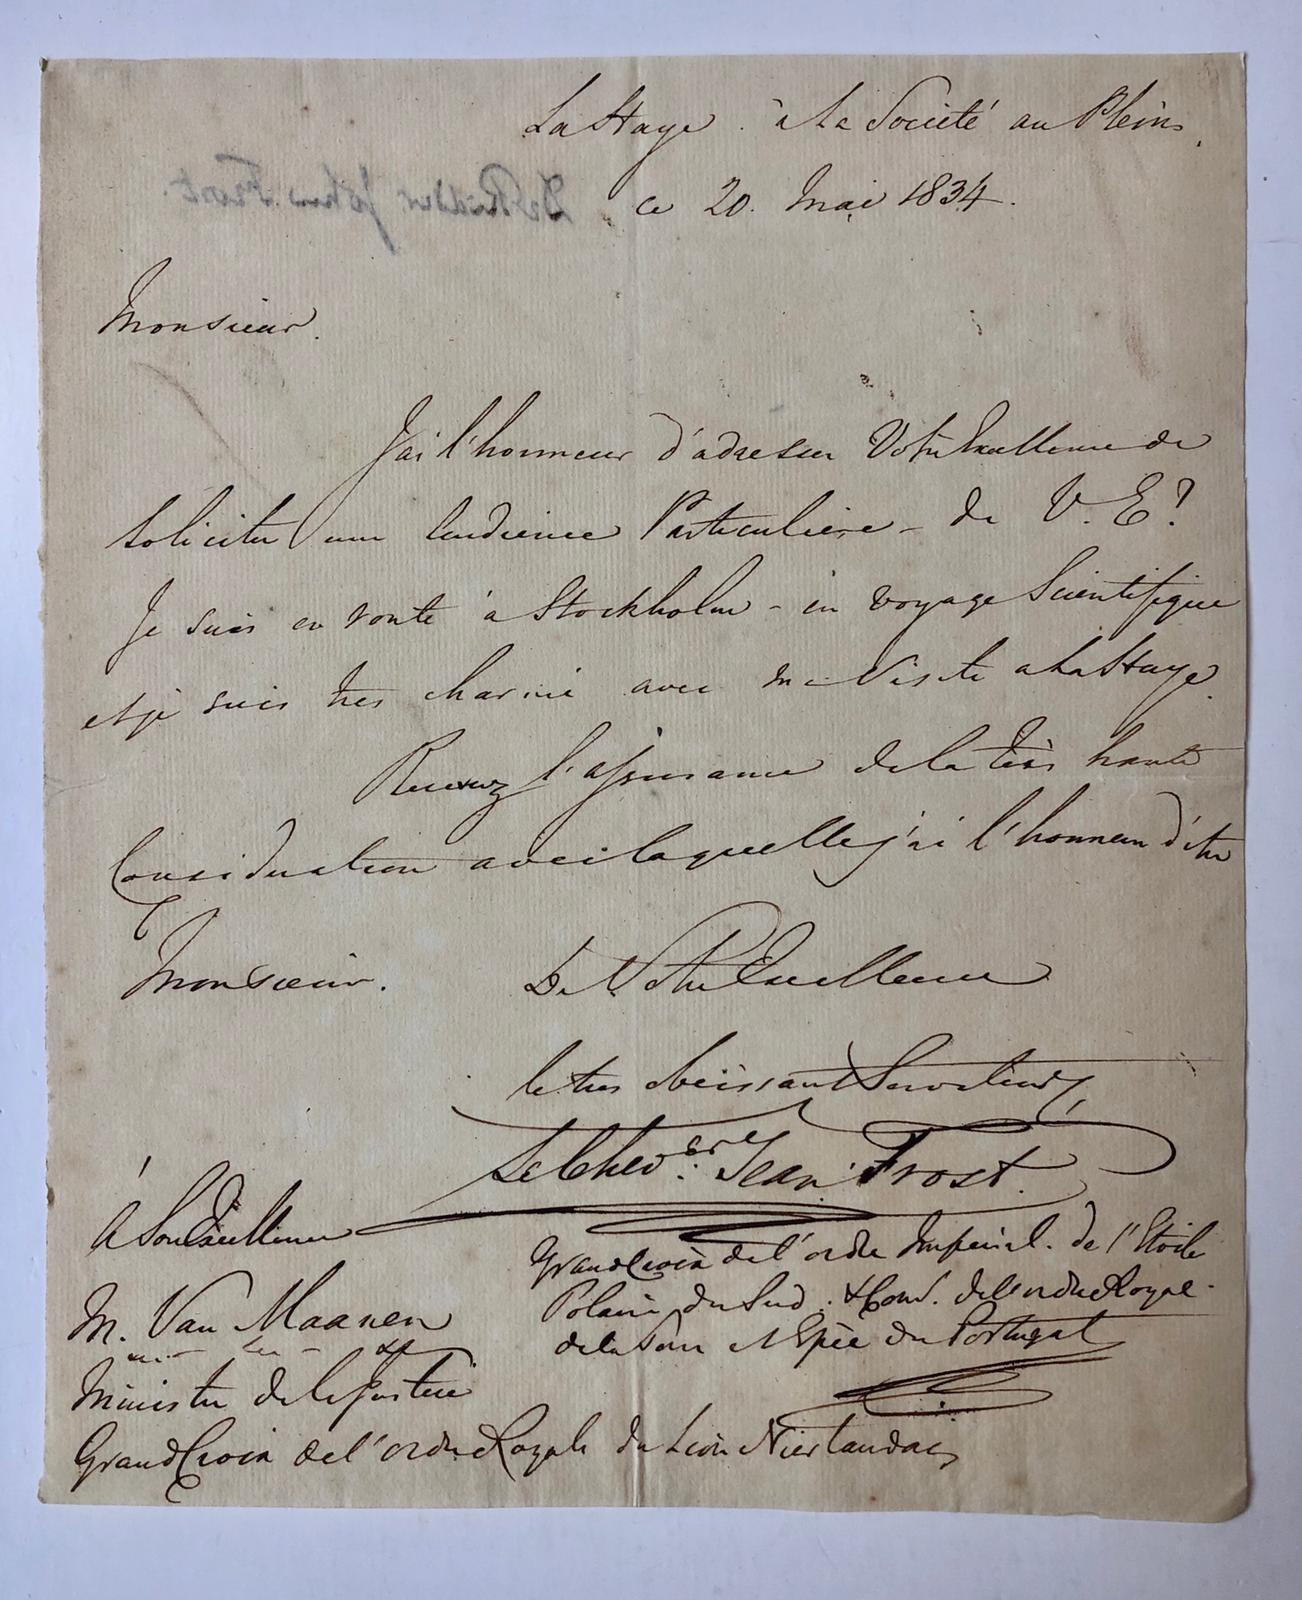  - [Manuscript] FROST, VAN MAANEN Brief van Dr. Ridder John Frost, d.d. `La Haye  Societ au Plein', 20 mei 1834, aan de minister van Justitie Van Maanen, 1 p.